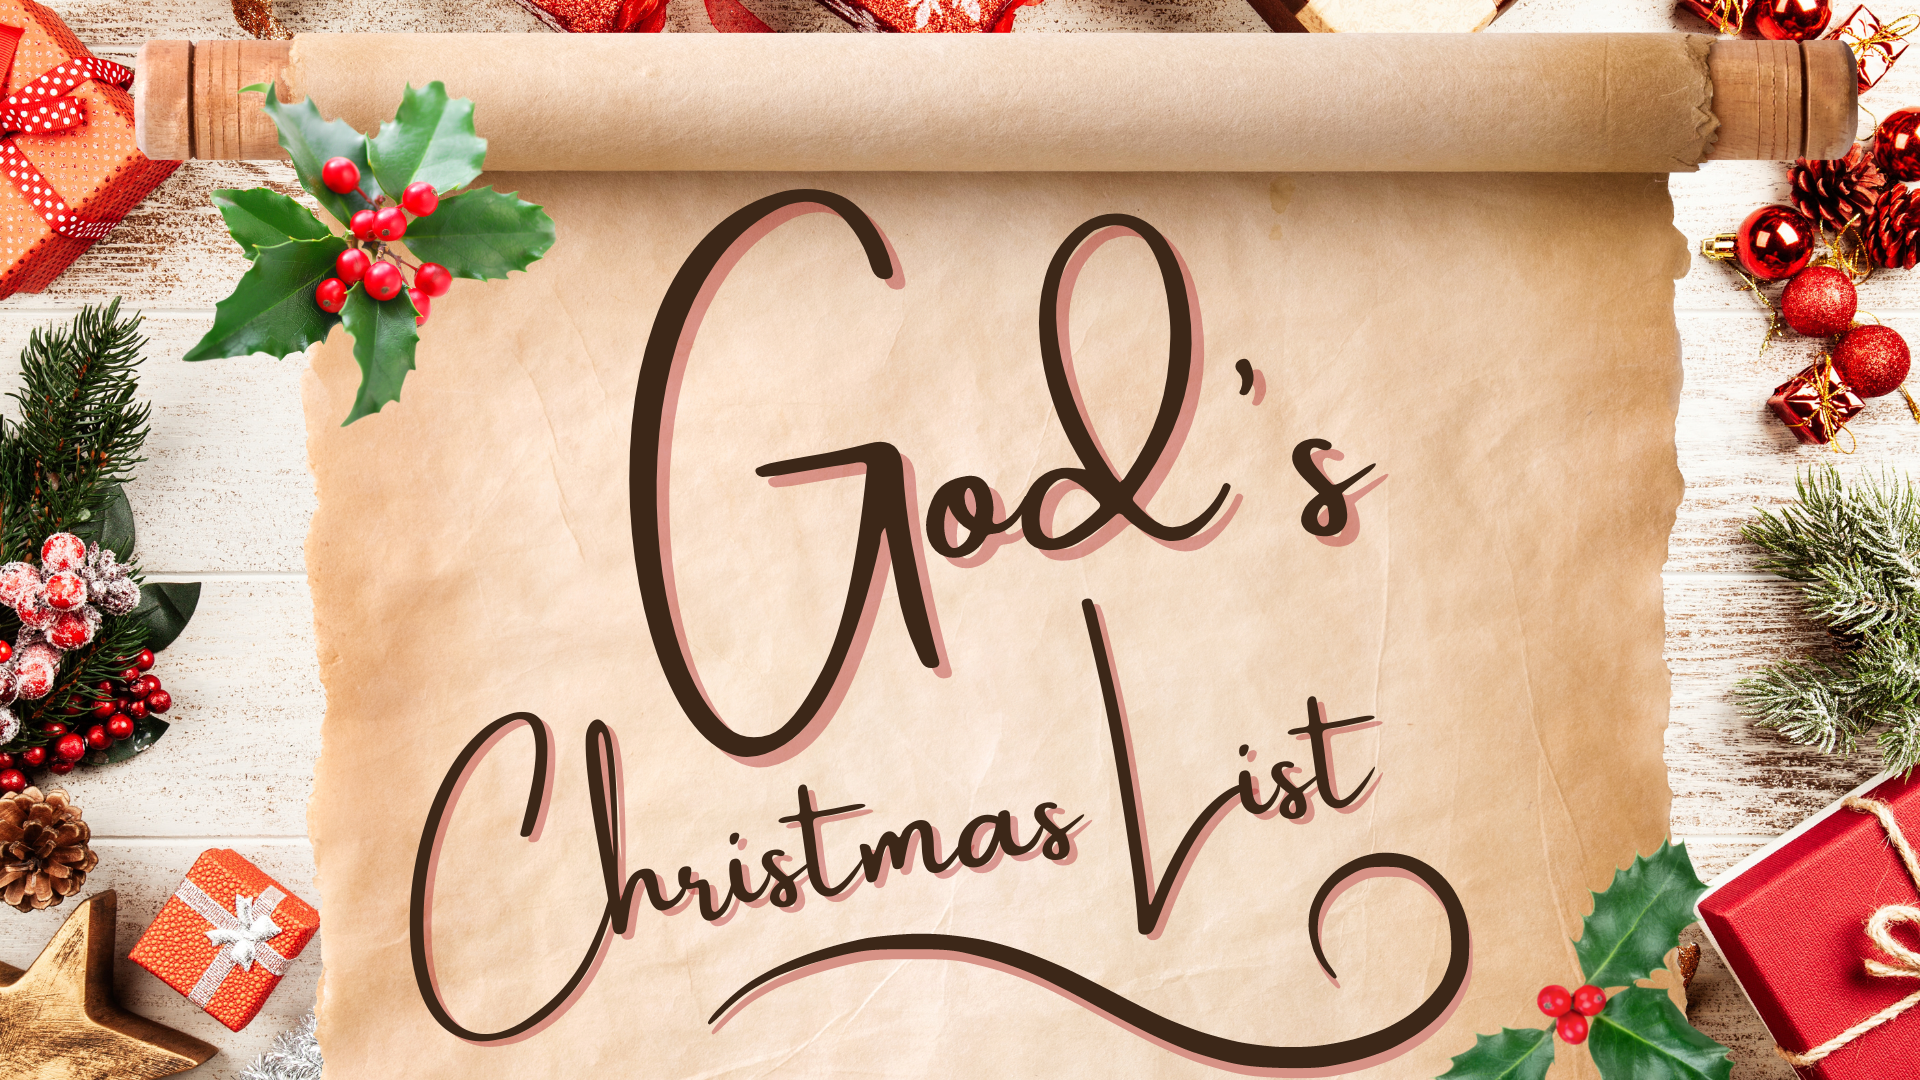 God's Christmas List: You